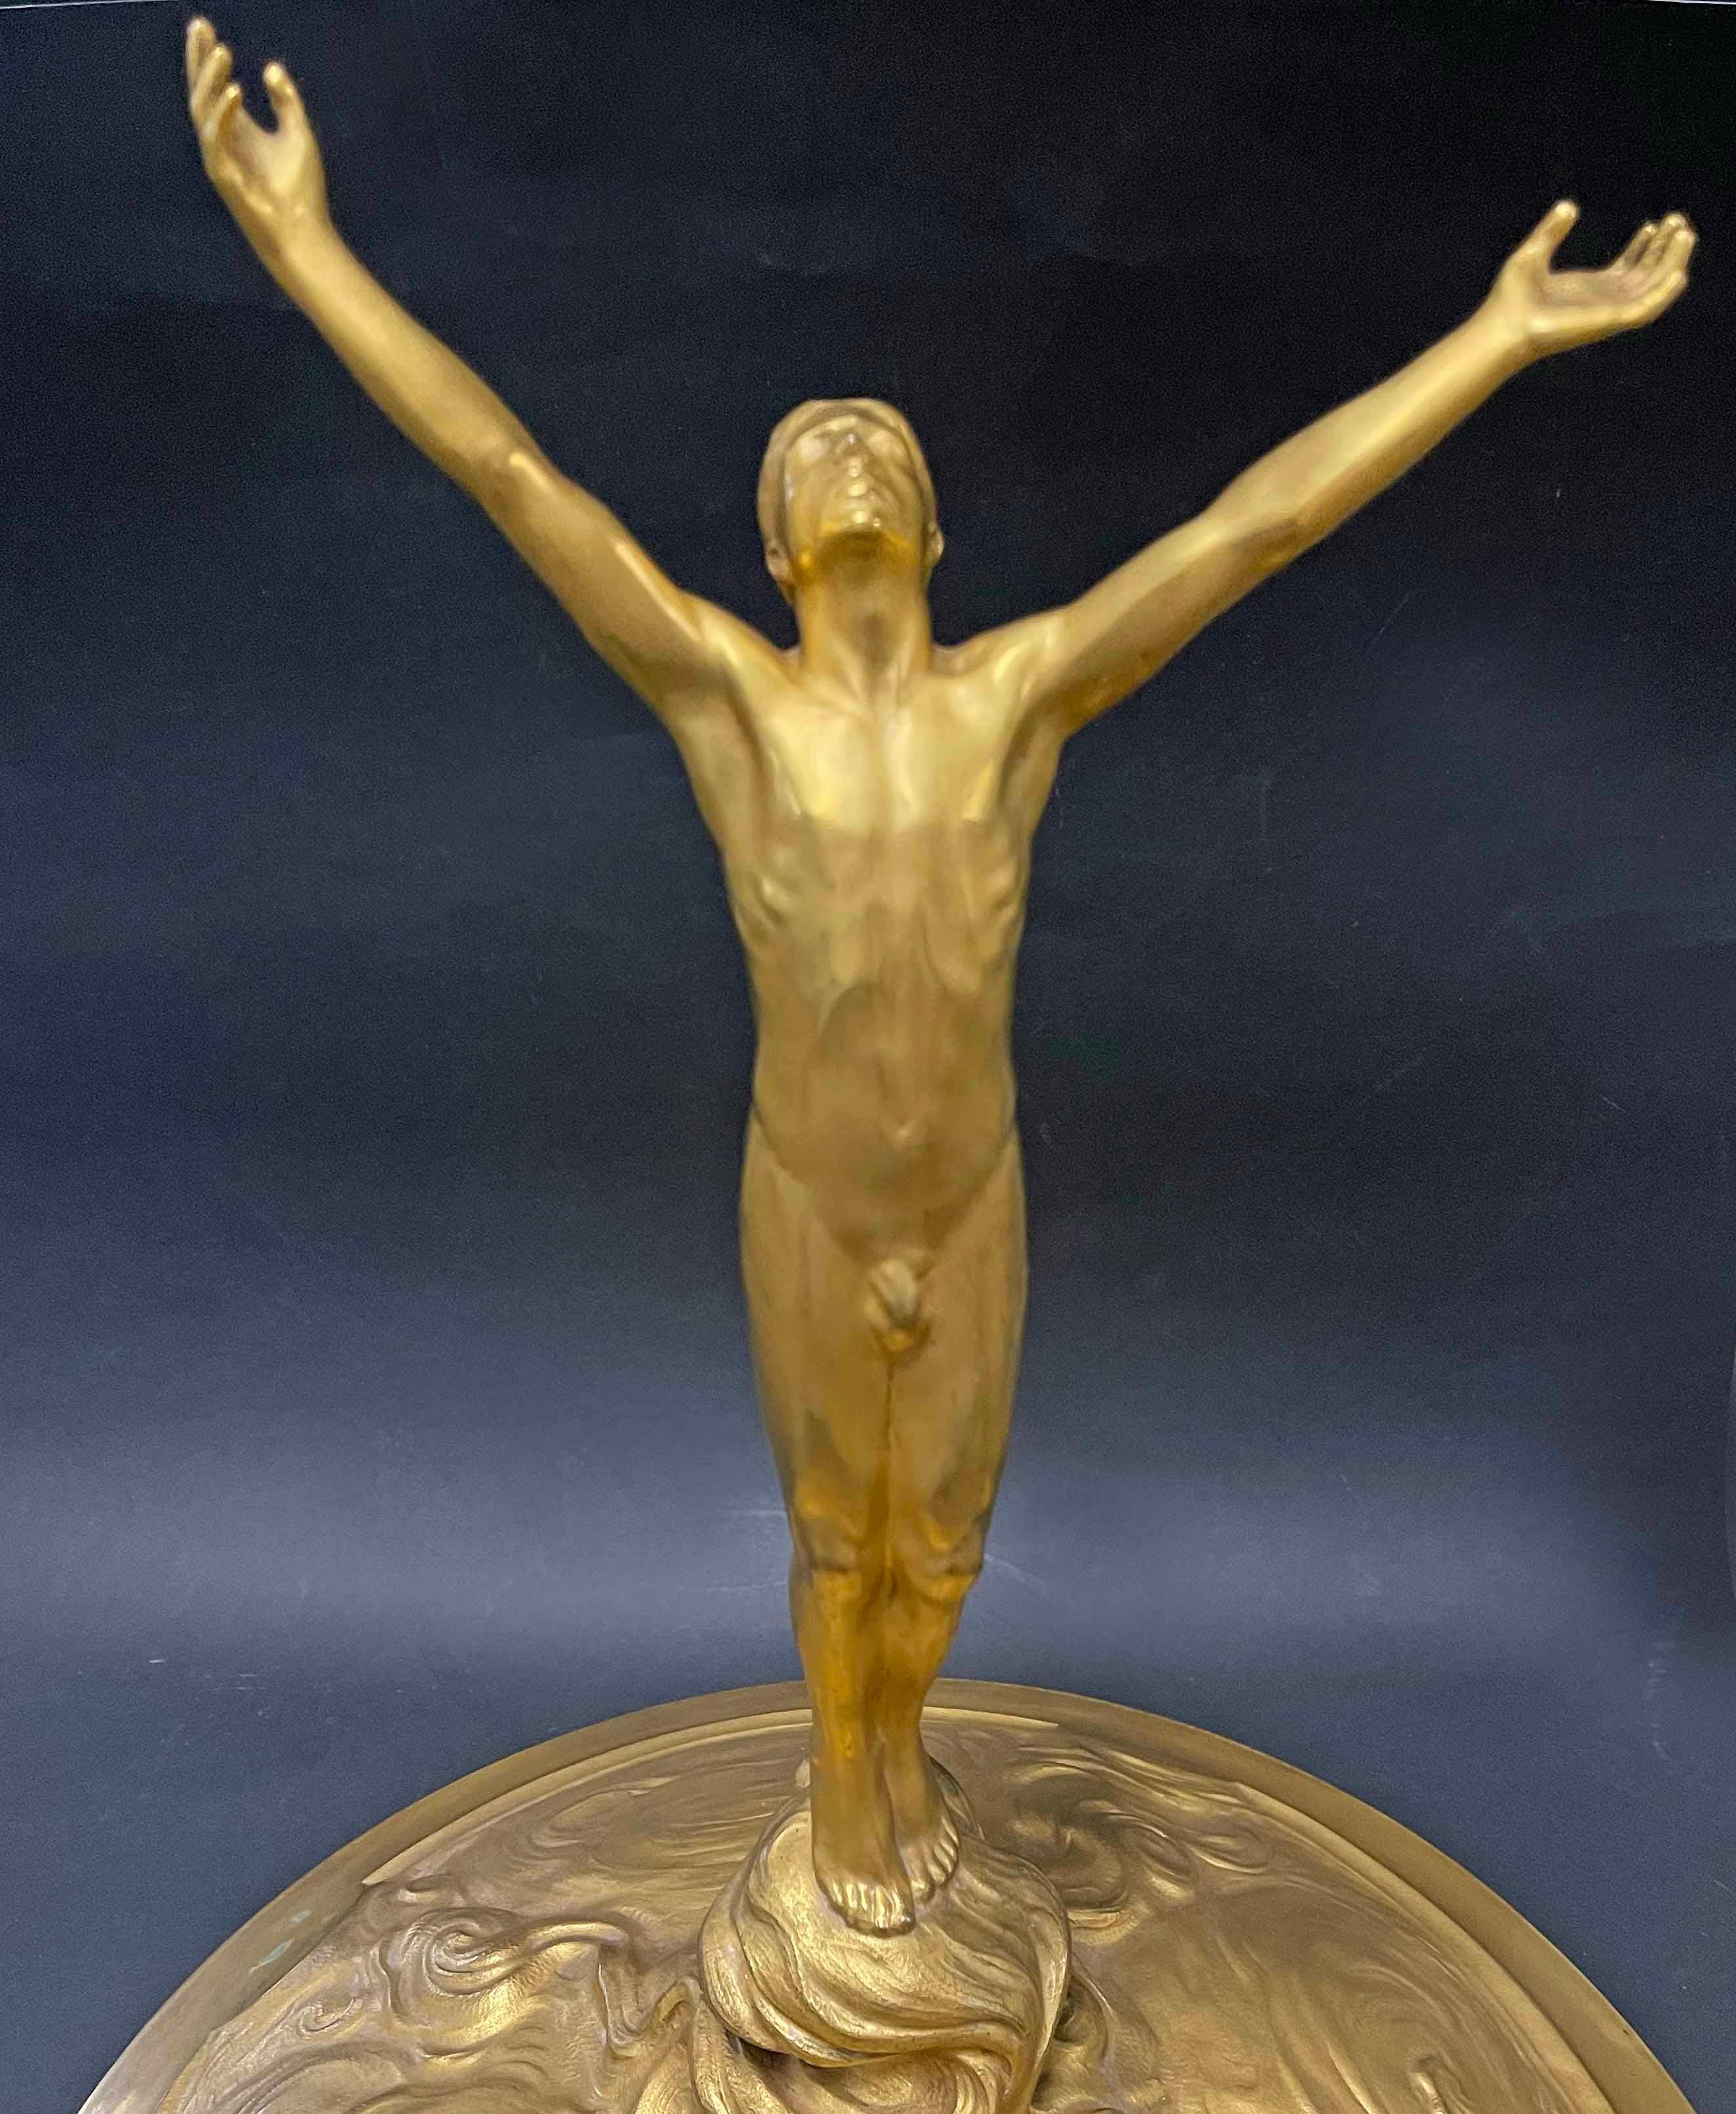 Grande et spectaculaire, cette coupe trophée en bronze doré de style Art nouveau a été sculptée par Eugène Bourgouin pour Christofle. Elle est richement décorée de cartouches Beaux-Arts, de têtes d'aigle en saillie et d'une profusion de motifs de